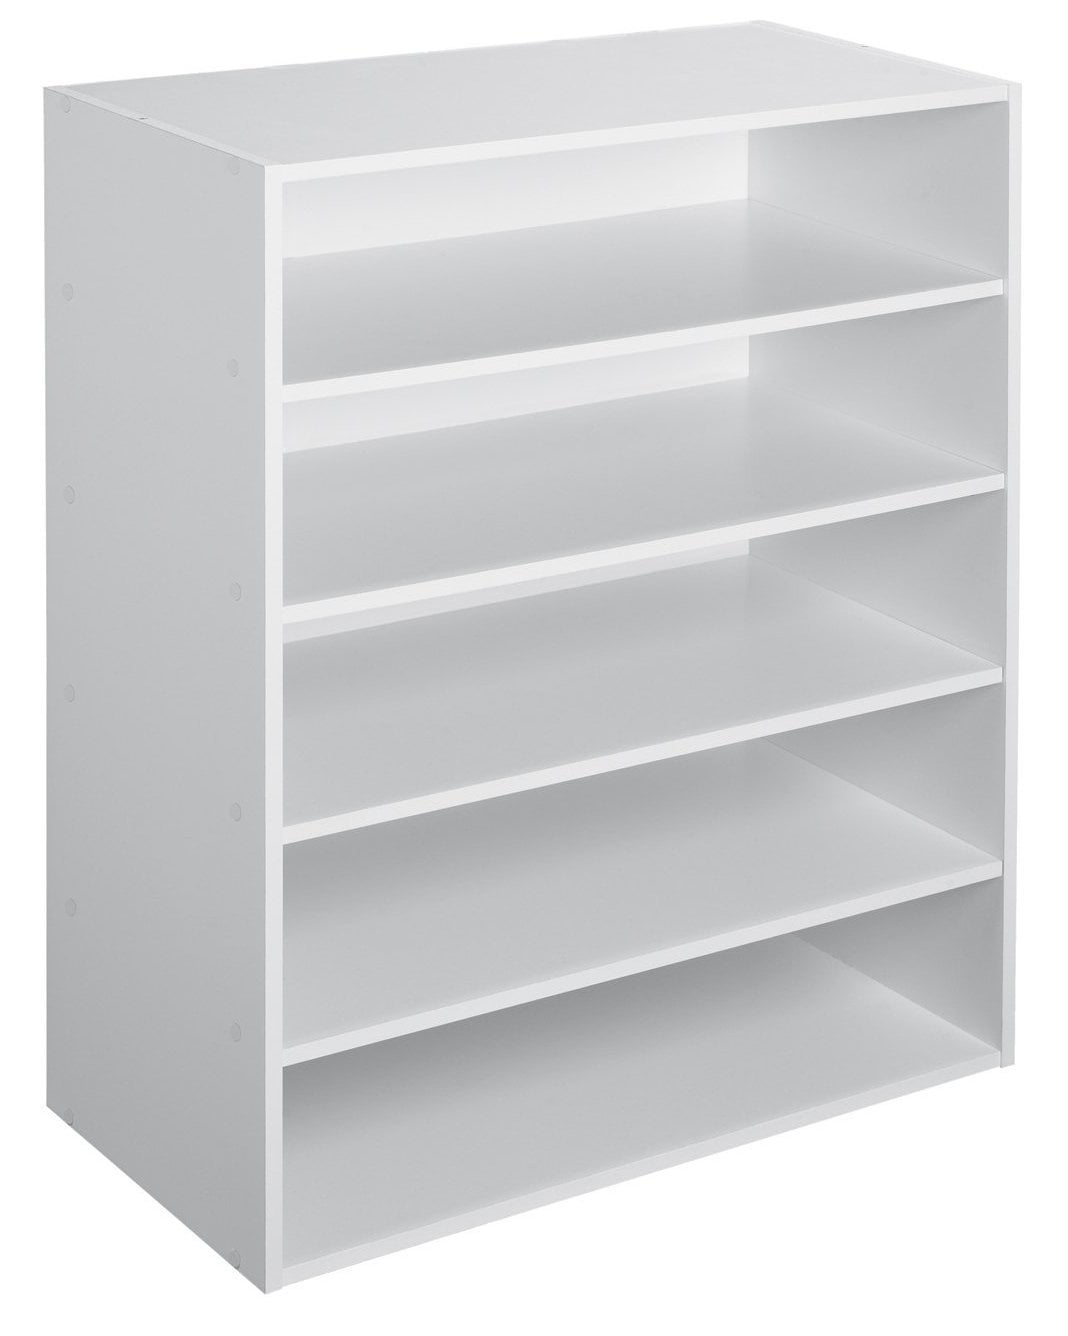 Closetmaid Display Shelf White, White Wood Display Shelves